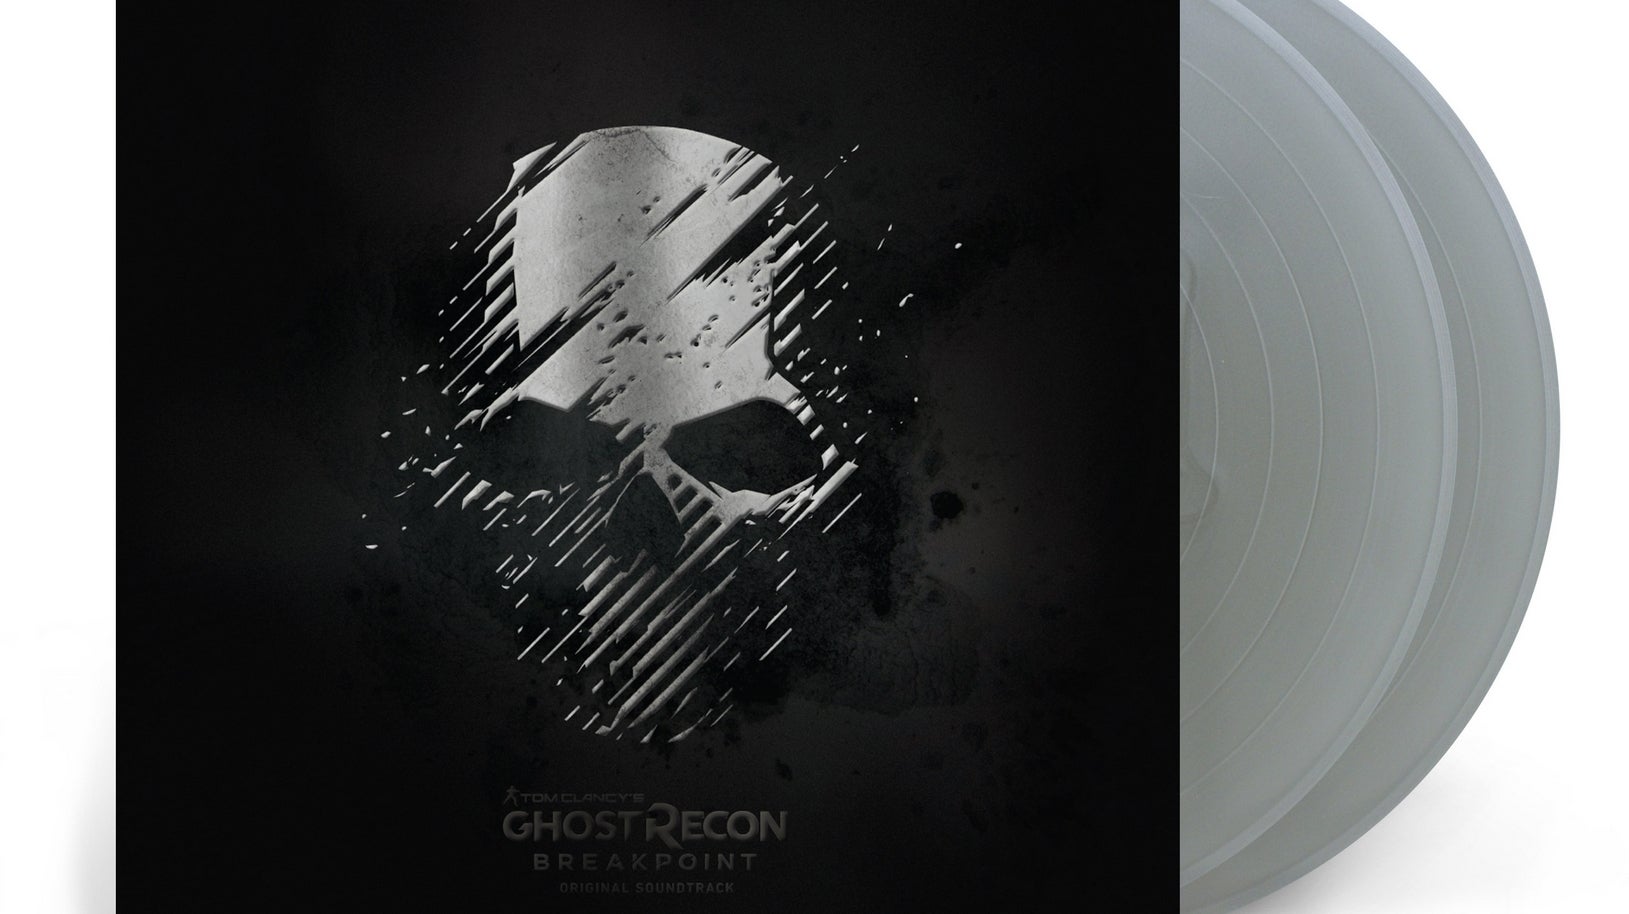 Bilder zu Der Soundtrack von Ghost Recon Breakpoint erscheint auf Vinyl